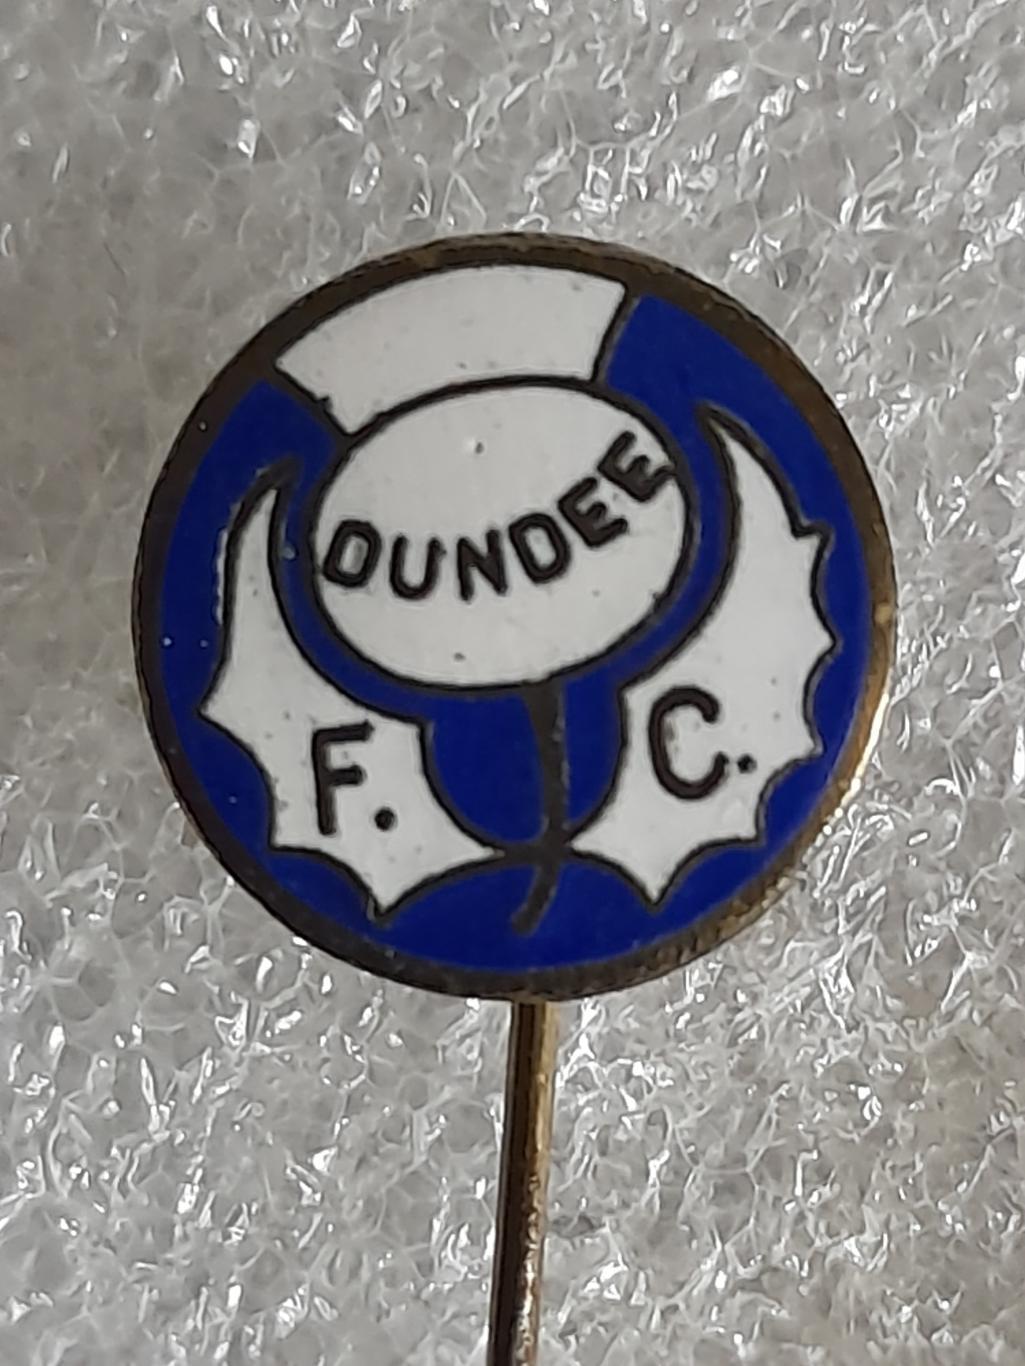 ФК Данді (Шотландія)/Dundee FC (Scotland)